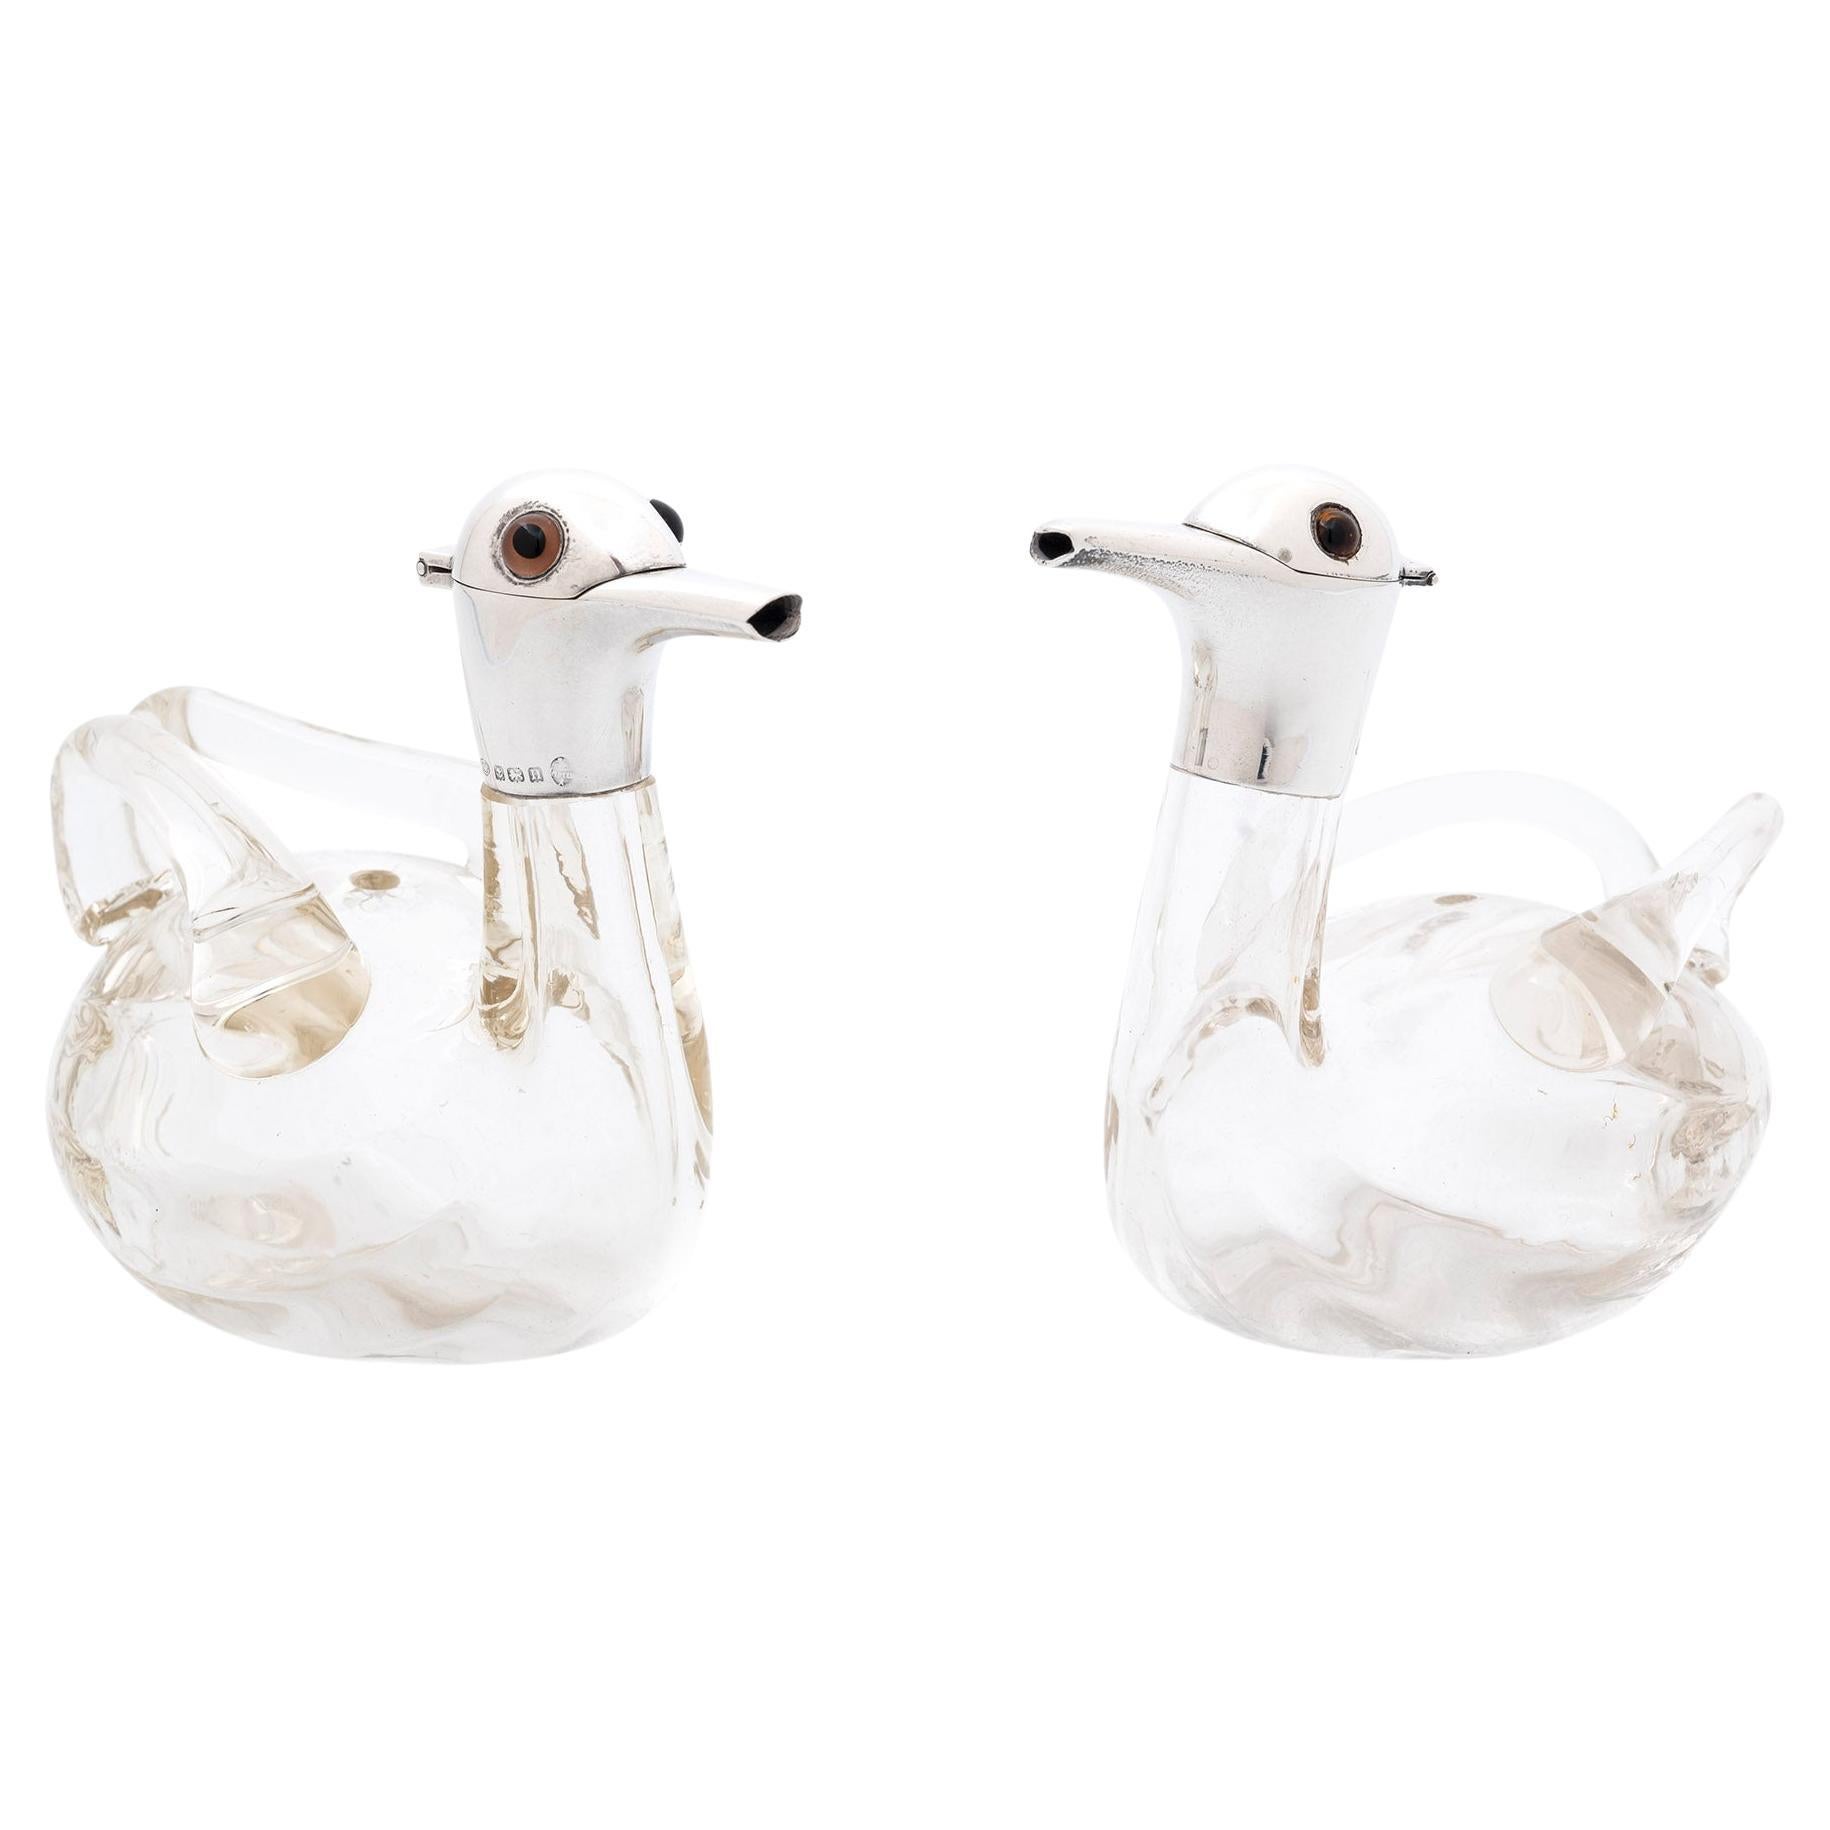 20. Jahrhundert Abgestimmtes Paar von Glas Ente Dekanter